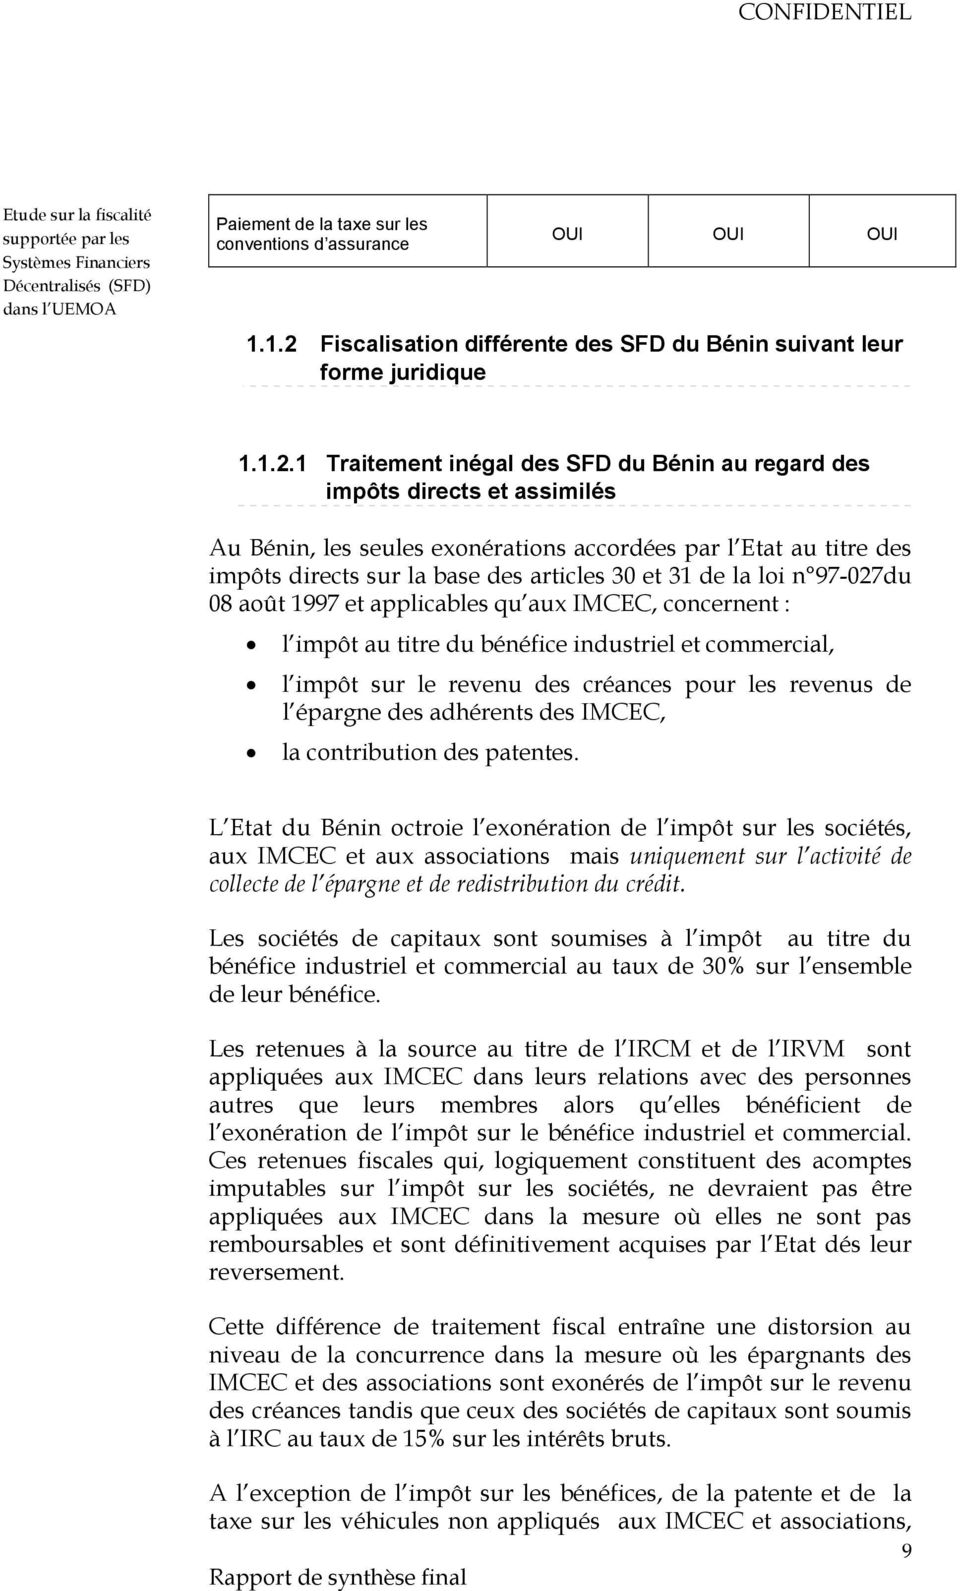 1 Traitement inégal des SFD du Bénin au regard des impôts directs et assimilés Au Bénin, les seules exonérations accordées par l Etat au titre des impôts directs sur la base des articles 30 et 31 de